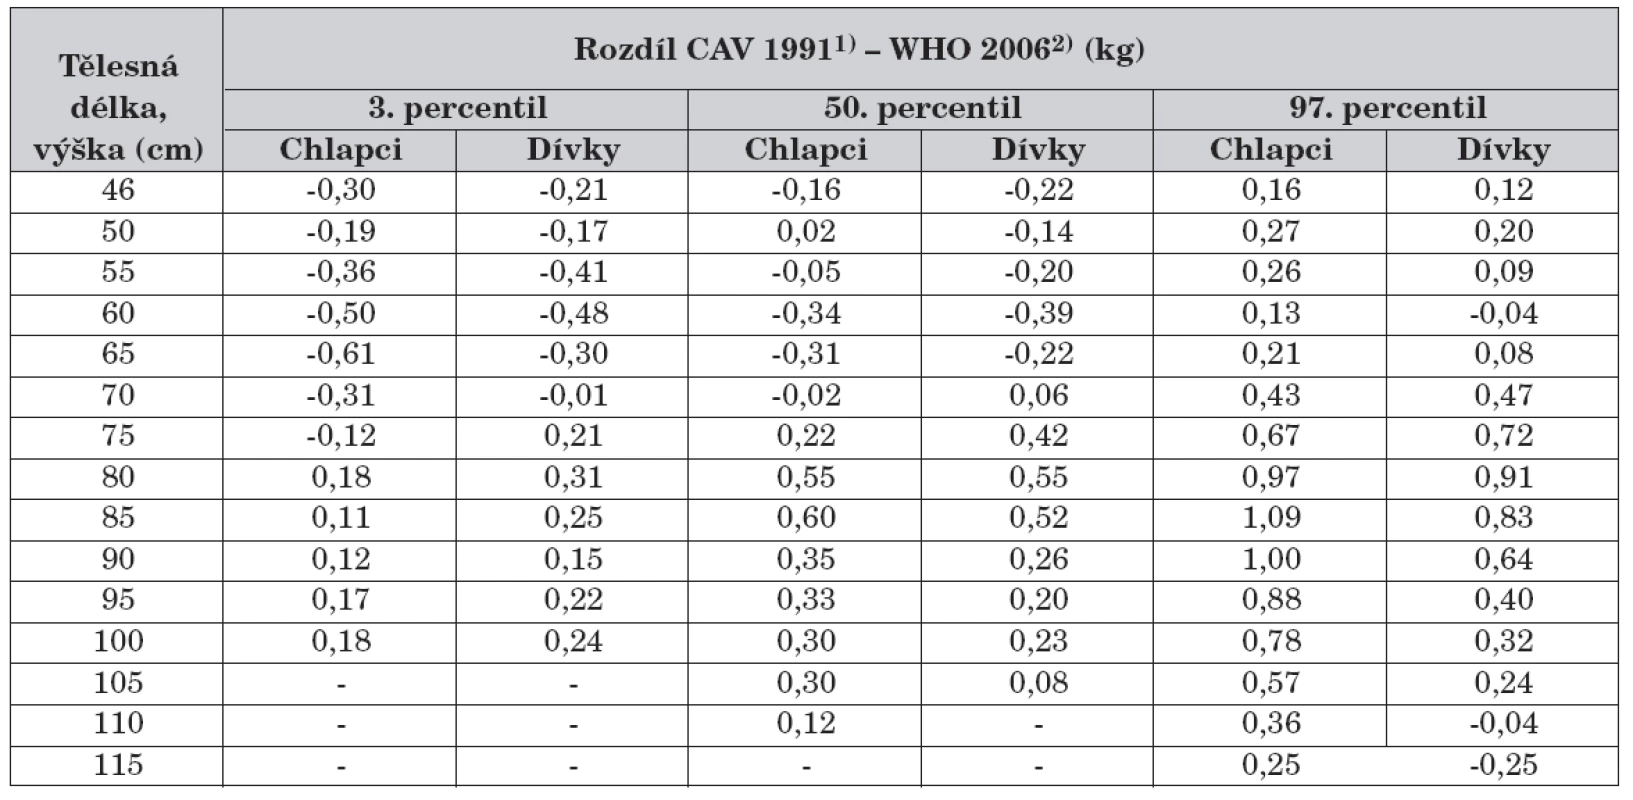 Rozdíl percentilových hodnot CAV 19911) aWHO 20062) – hmotnost k tělesné délce a tělesné výšce.